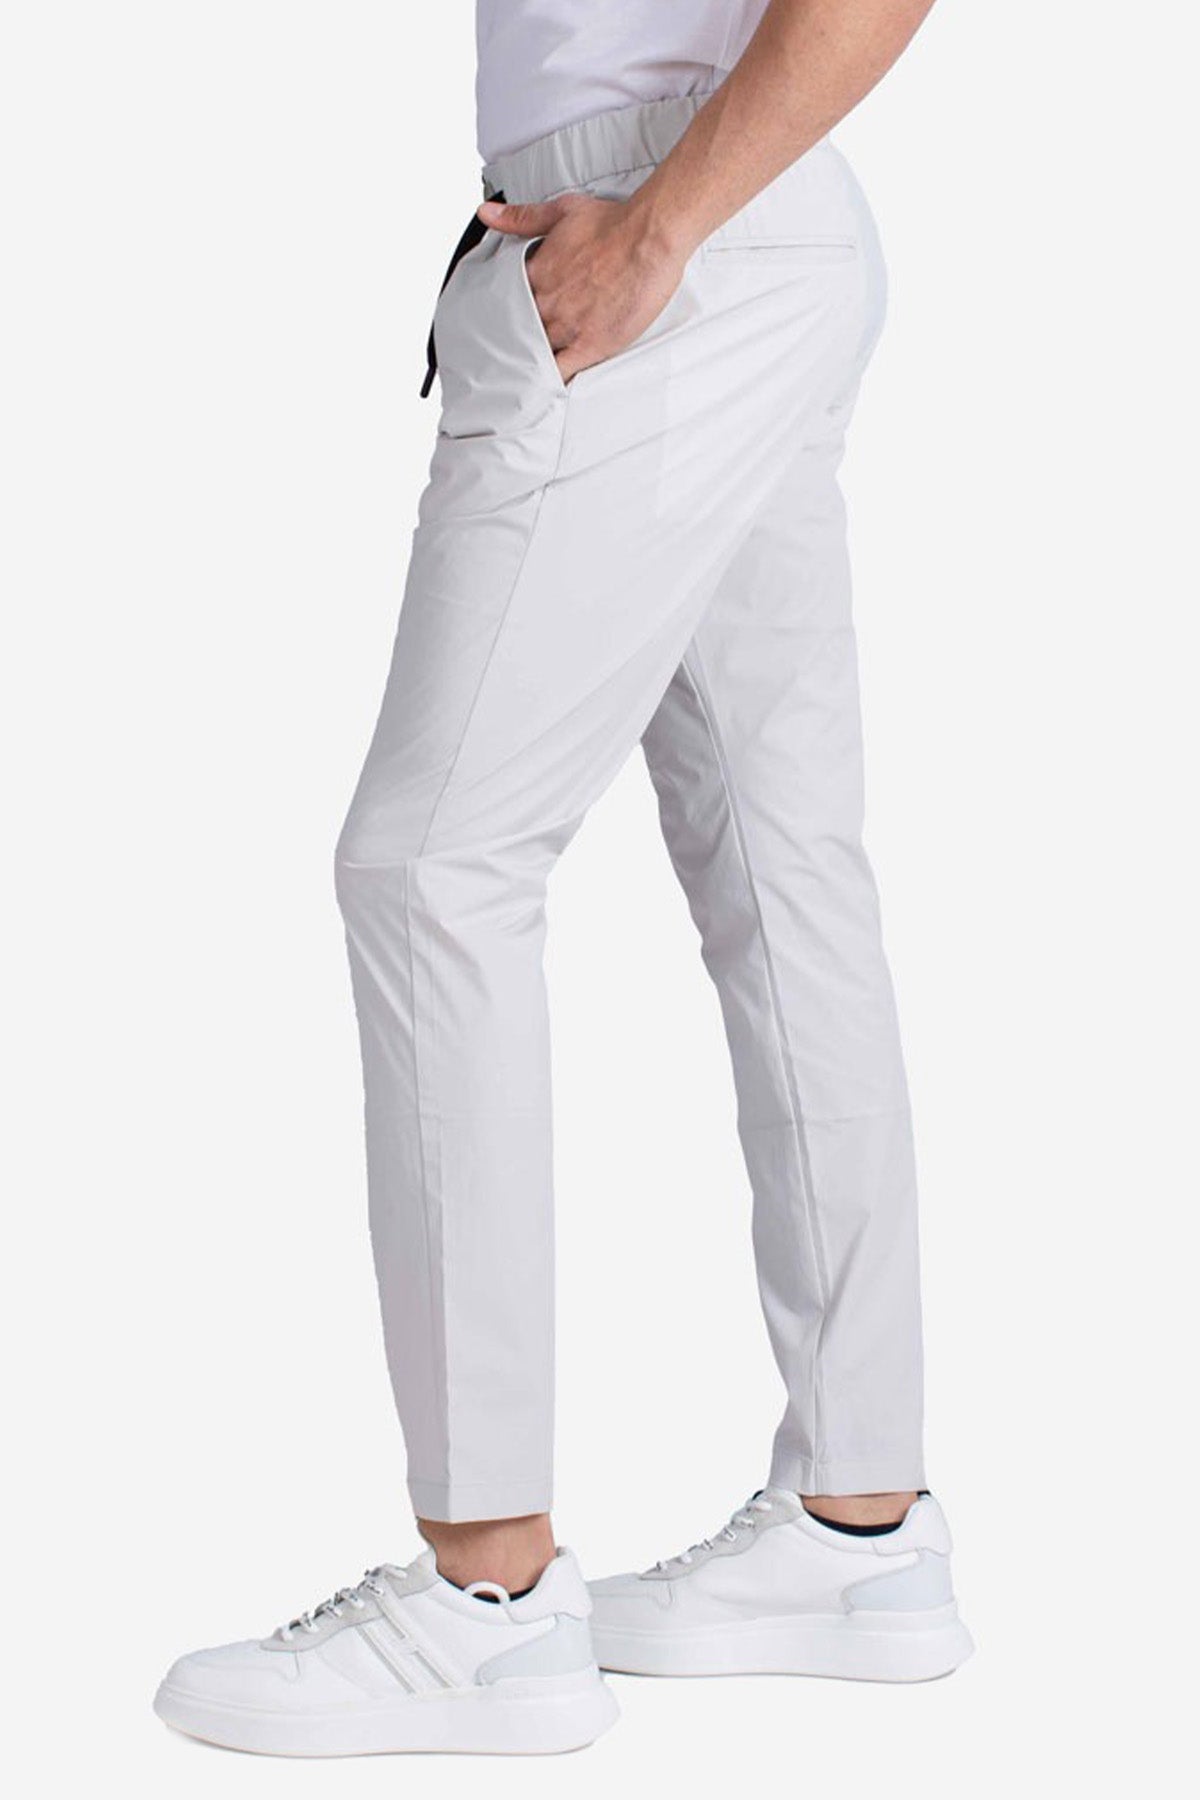 Herno Laminar Beli Lastikli Streç Pantolon-Libas Trendy Fashion Store